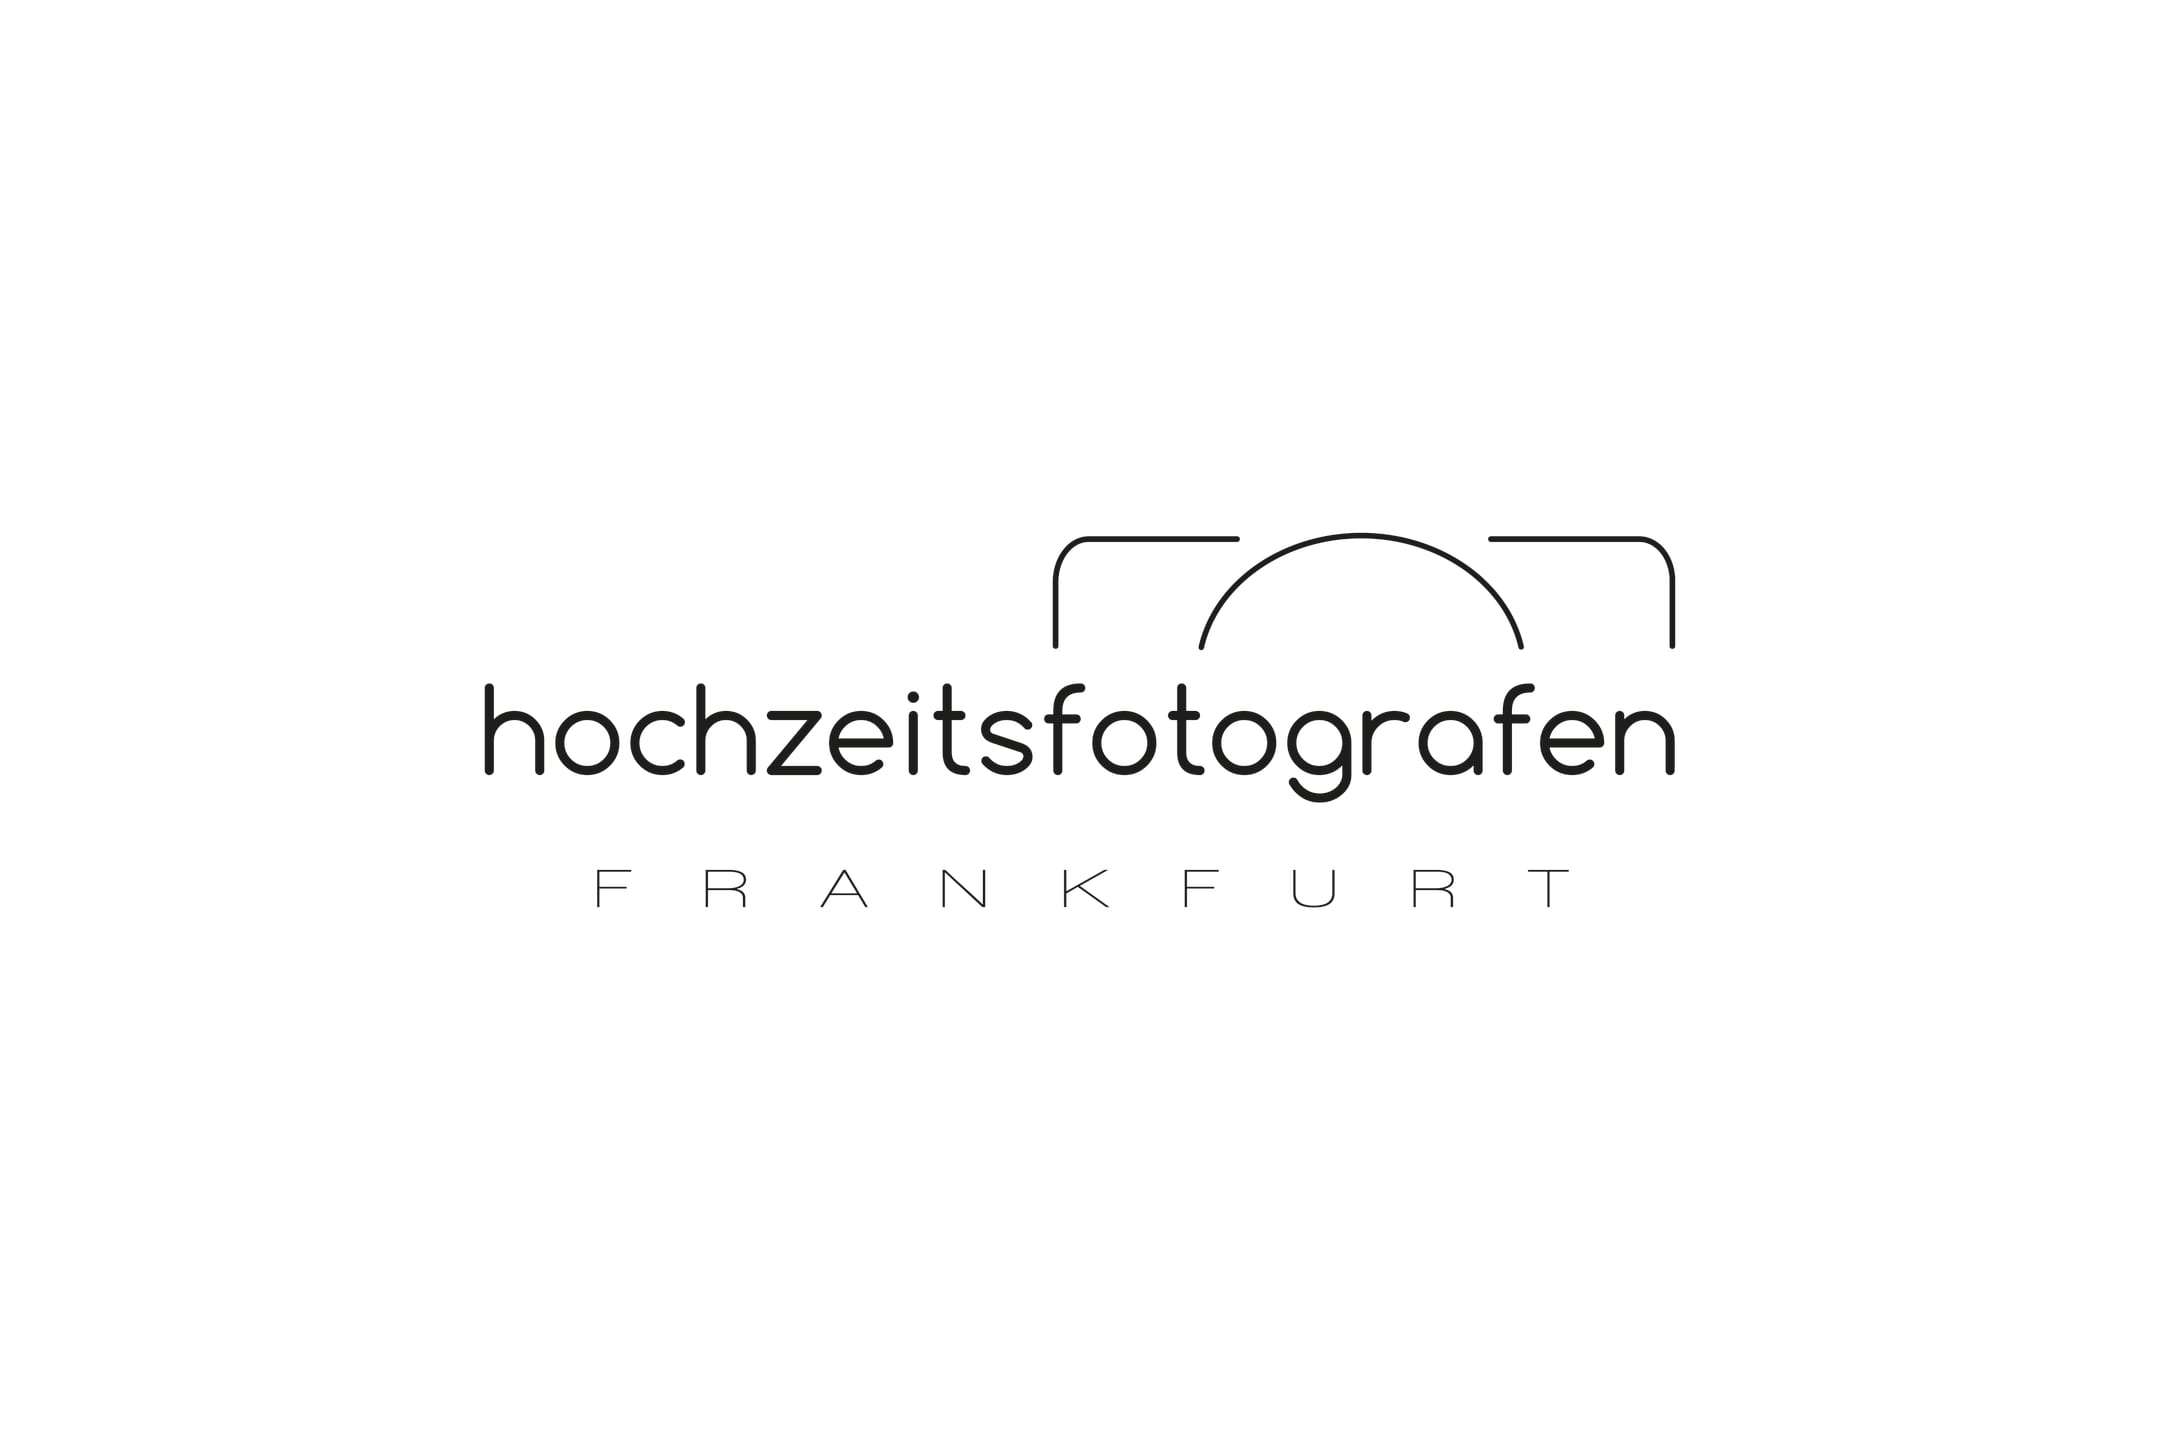 Hochzeitsfotografen Frankfurt - Hochzeitsfotos in Frankfurt am Main